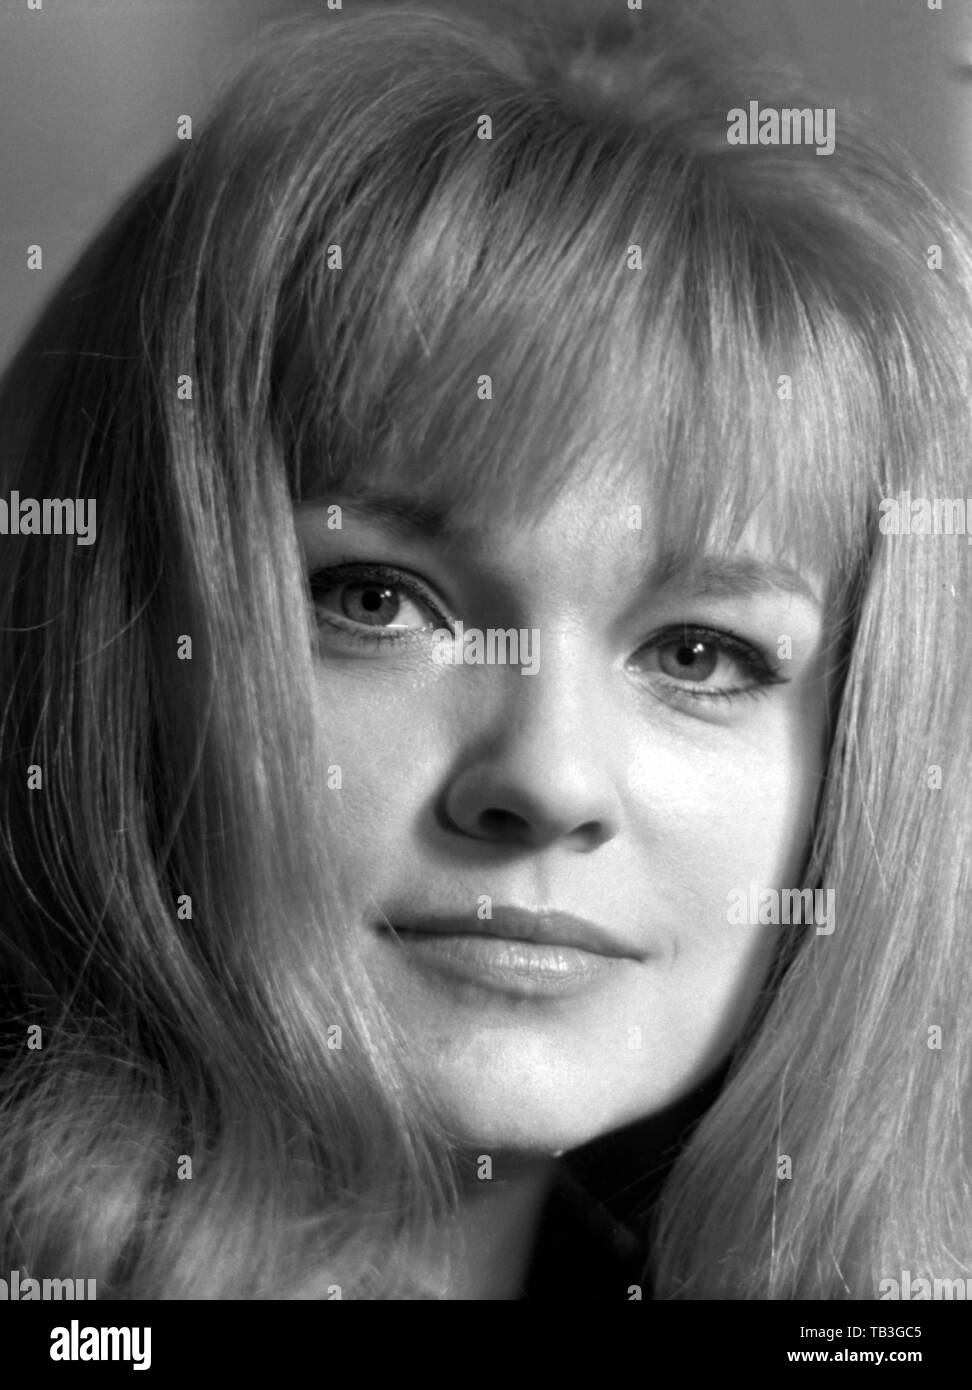 01.05.1968, Berlin, Berlin, GDR - Eva-Maria Hagen, actress. 00S680501D706CAROEX.JPG [MODEL RELEASE: NO, PROPERTY RELEASE: NOT APPLICABLE (c) caro imag Stock Photo